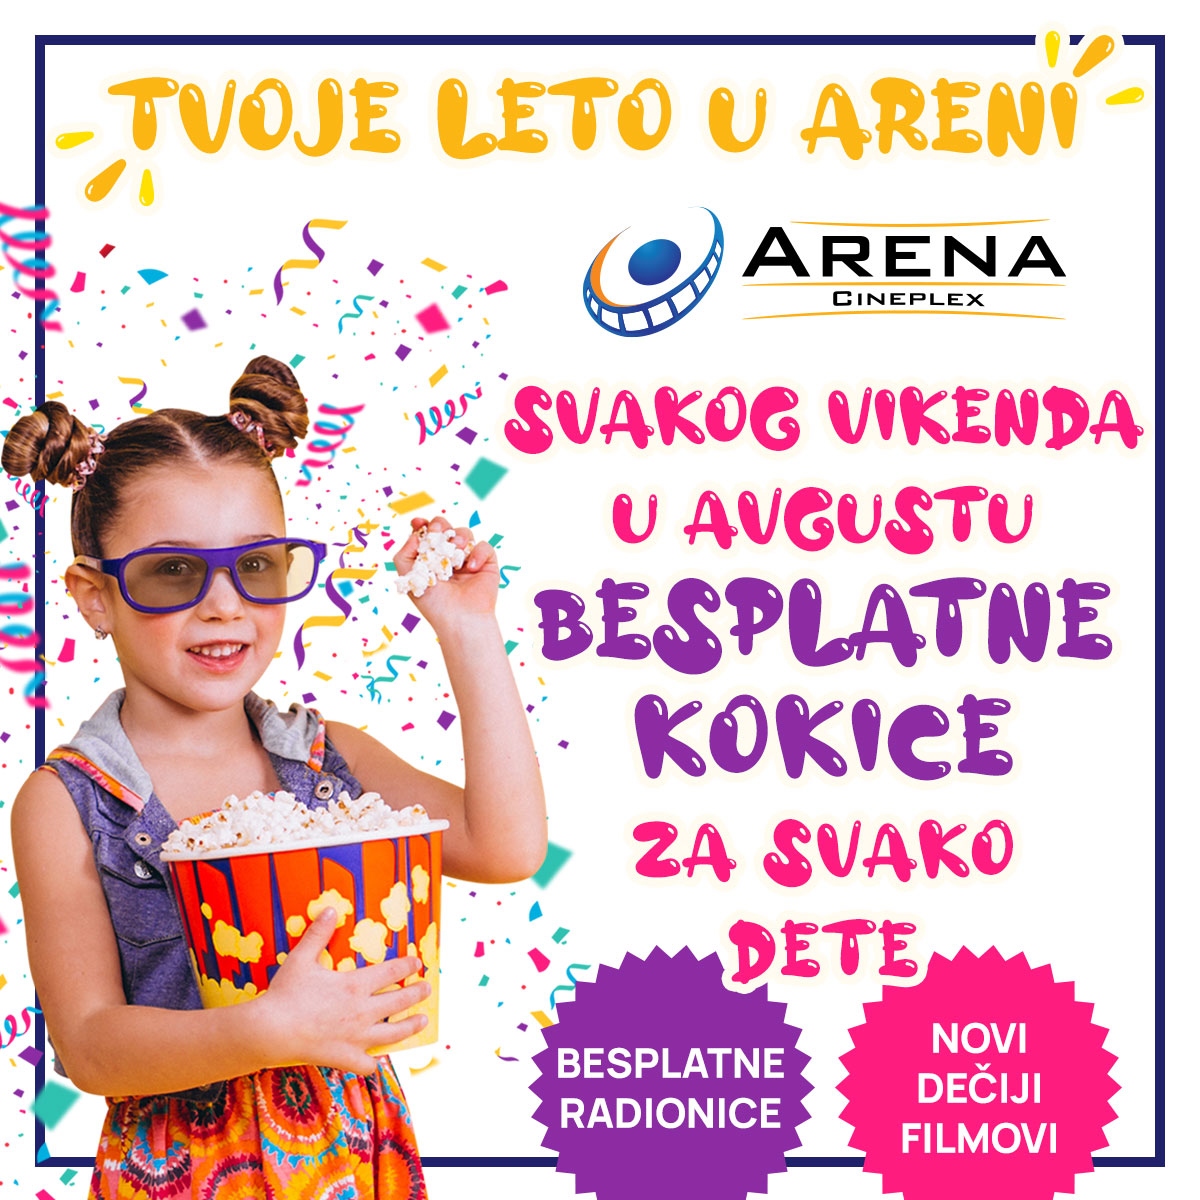 Tvoje leto u Areni donosi najmlađim posetiocima Arene Cineplex mnogo zabave, dobrih filmova i besplatne kokice svakog vikenda u avgustu!